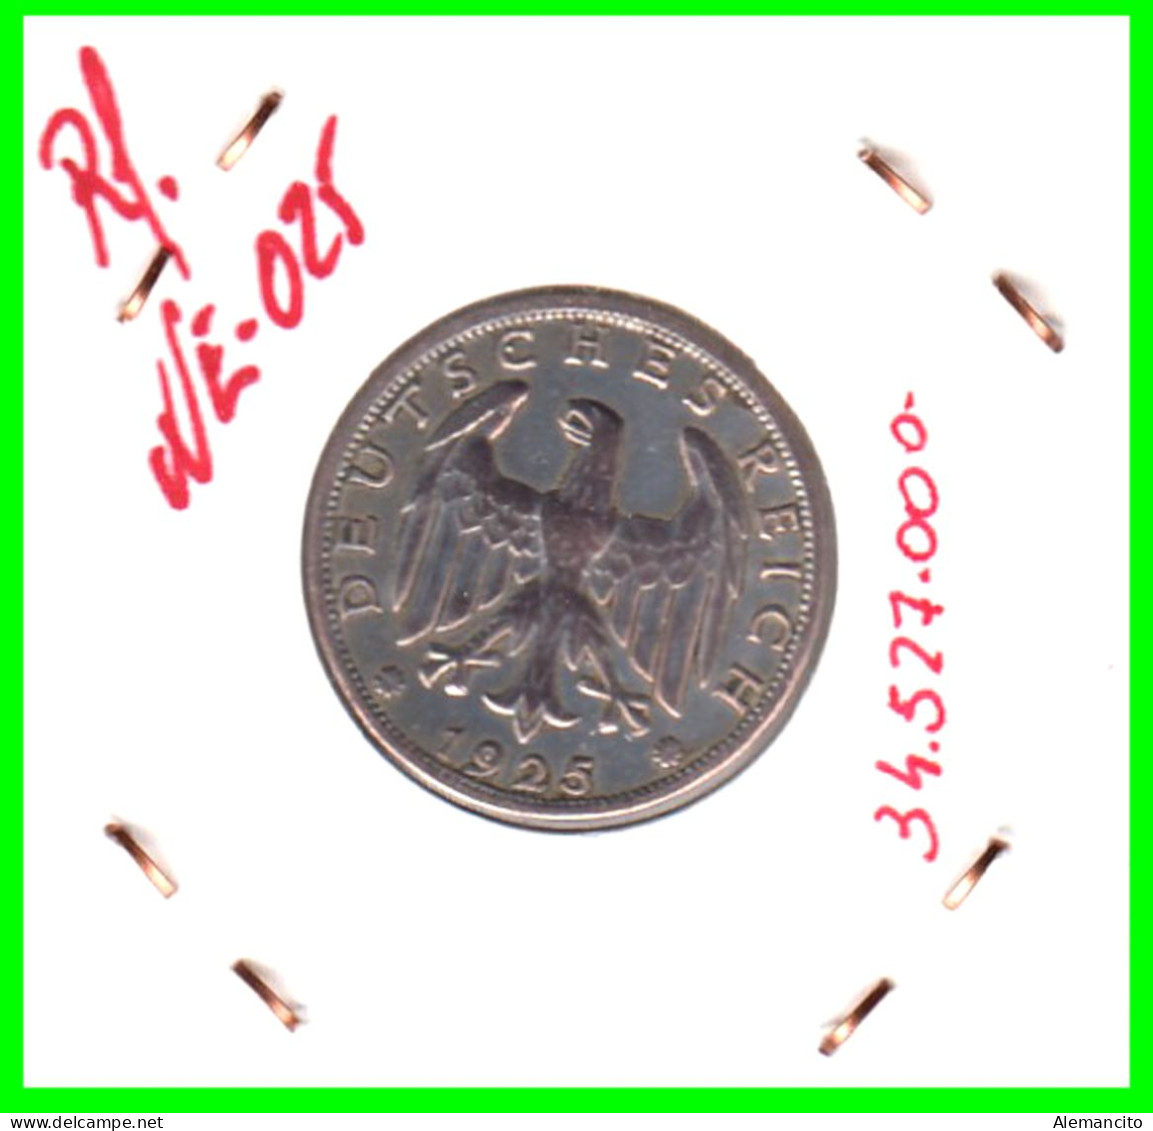 GERMANY REPÚBLICA DE WEIMAR 1 MARK ( 1925 CECA - A )  ( DEUTSCHES REICHSMARK KM # 44 ) - 1 Marco & 1 Reichsmark